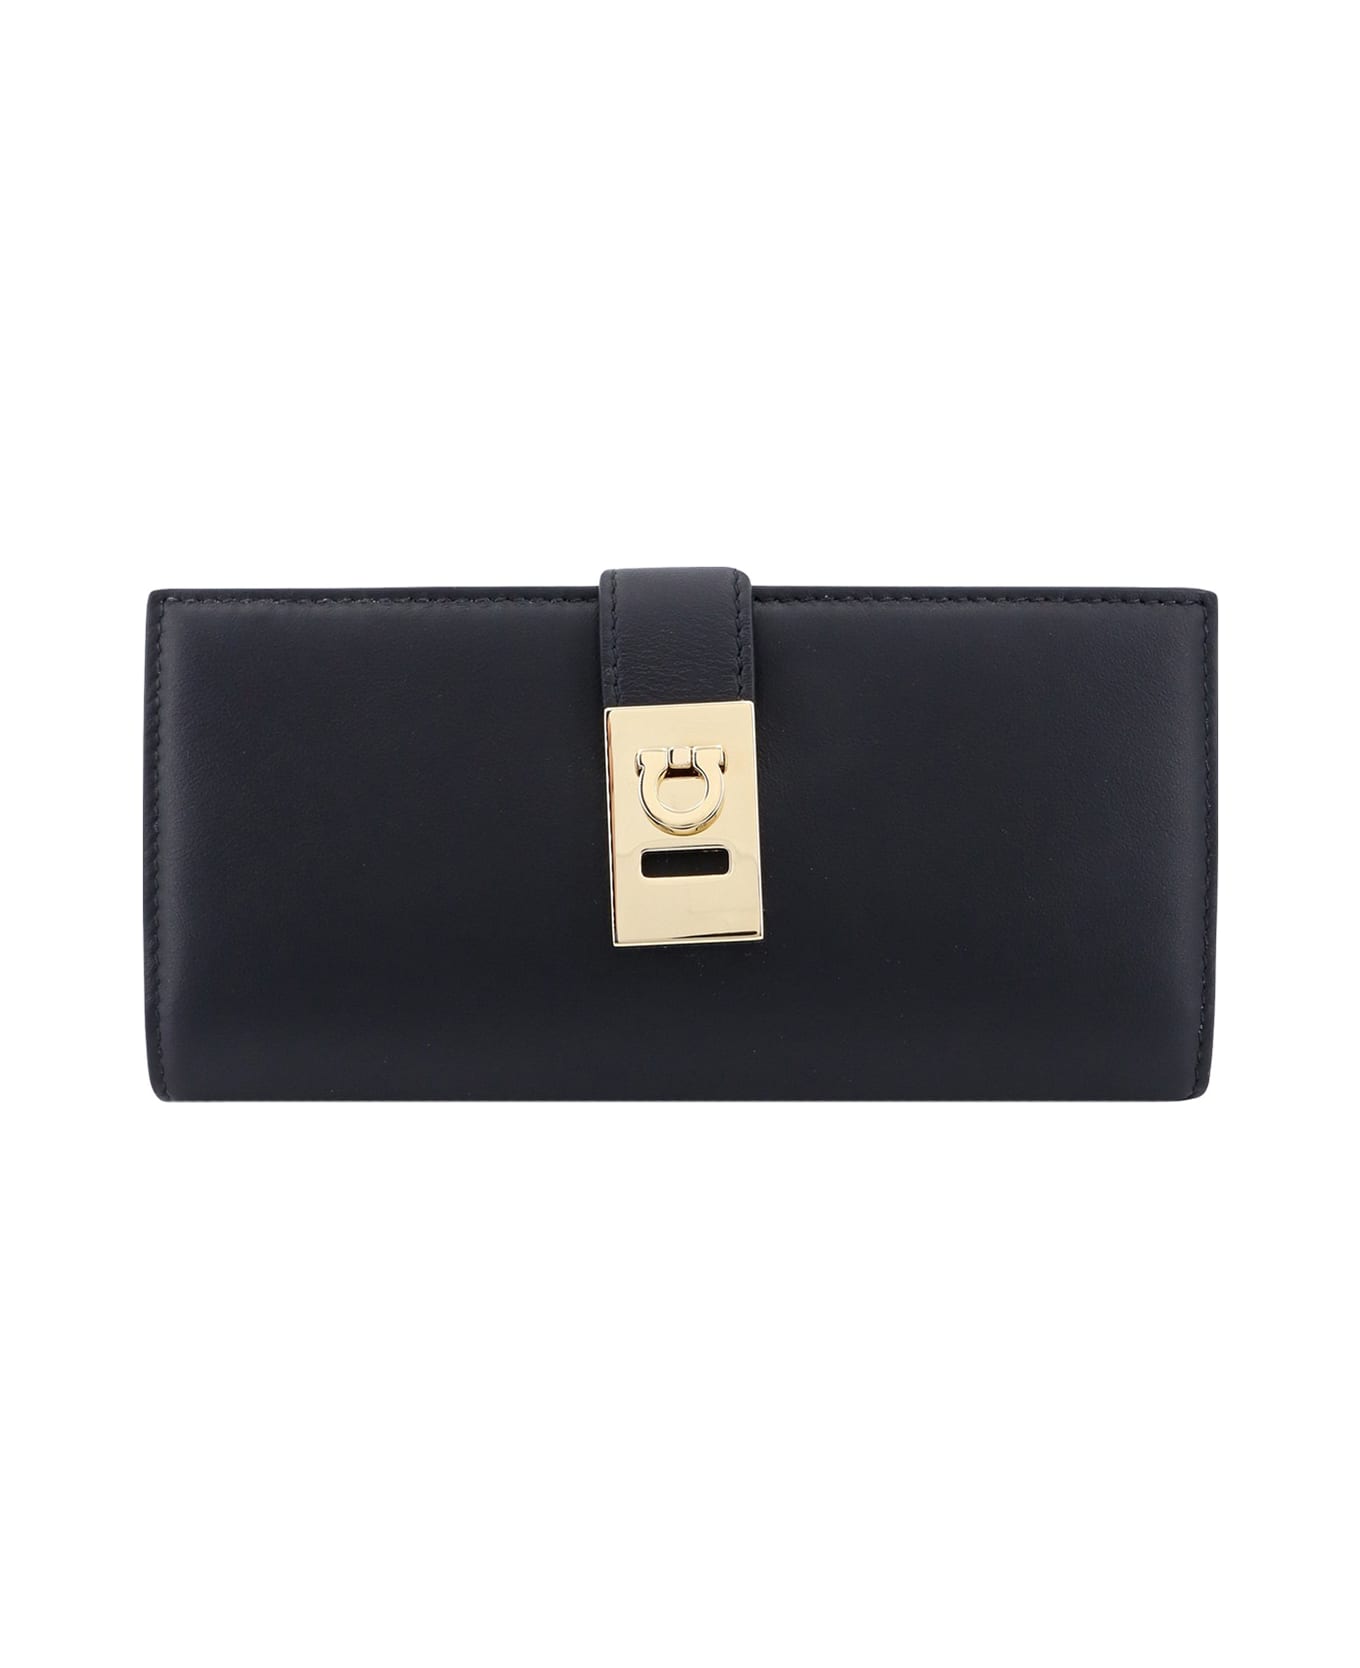 Ferragamo Wallet - Black 財布